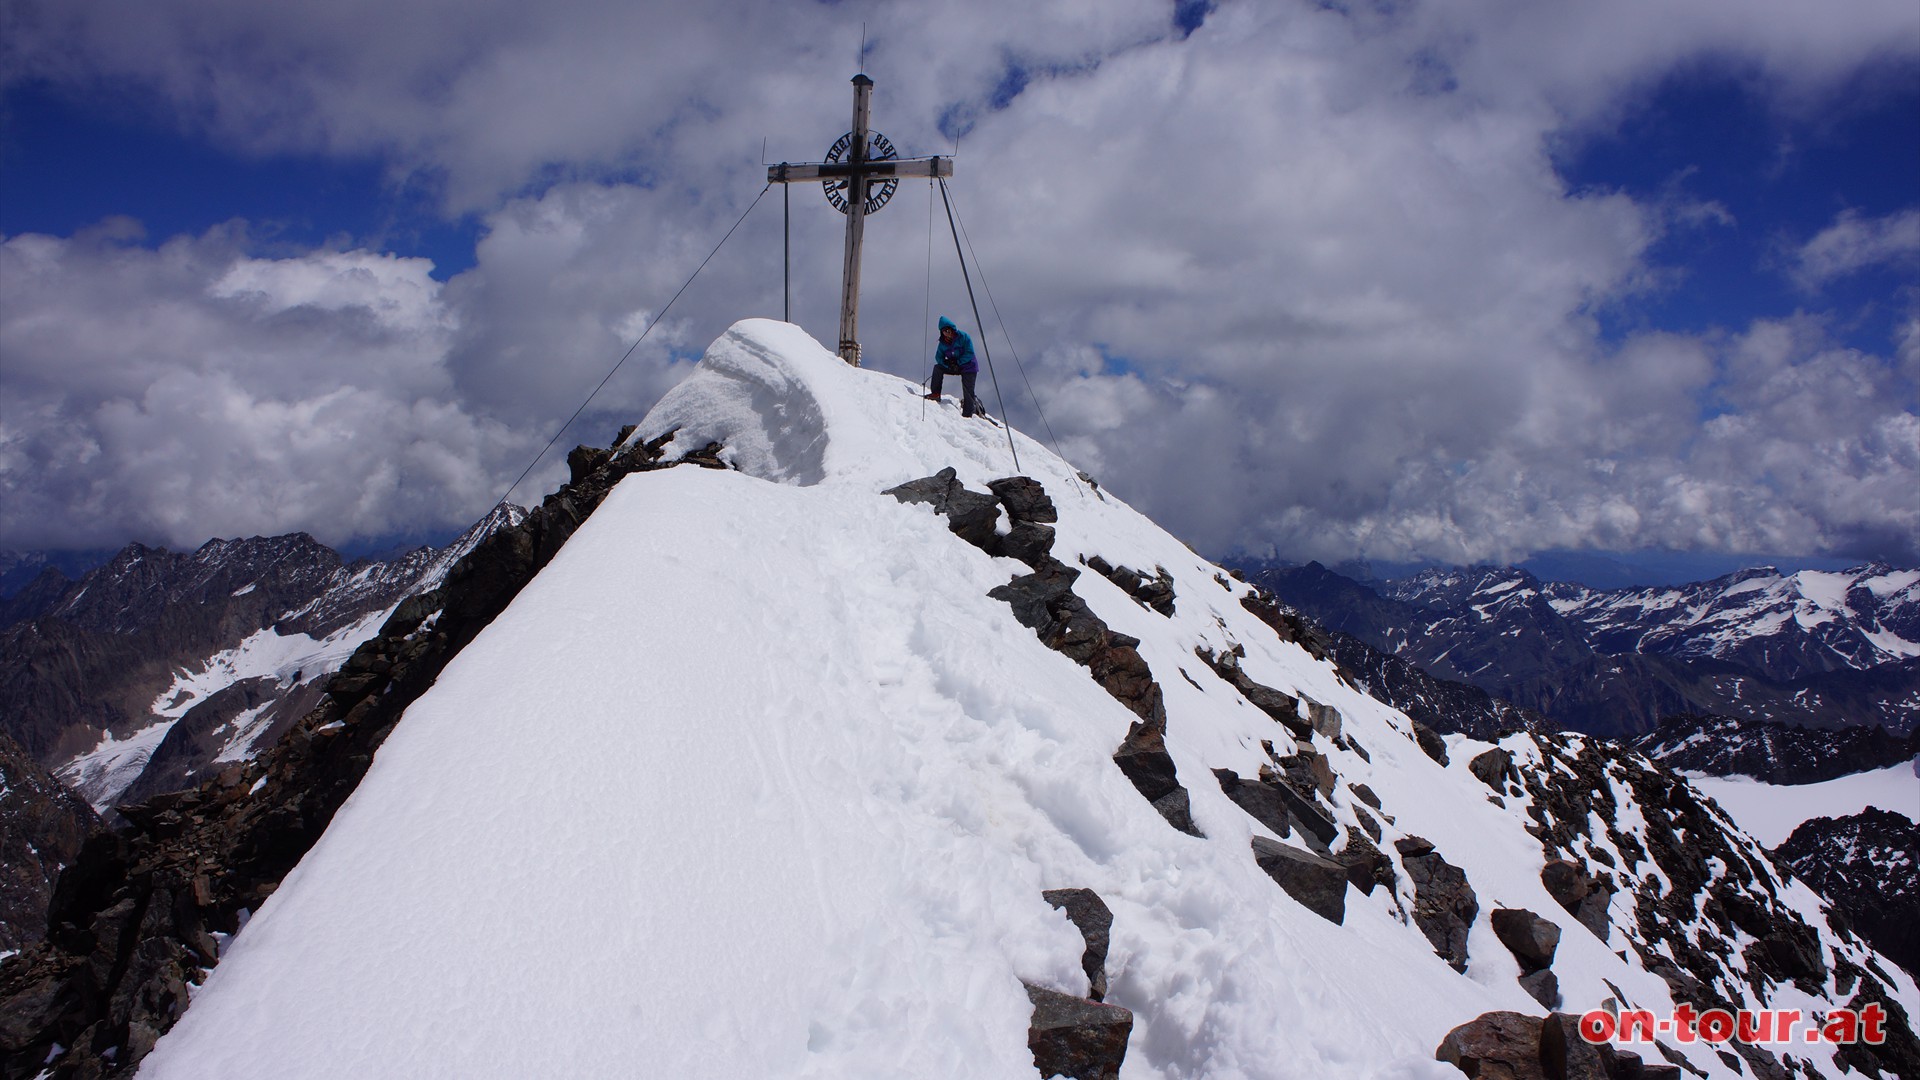 Vorsicht bei Schneelage im Gipfelbereich.